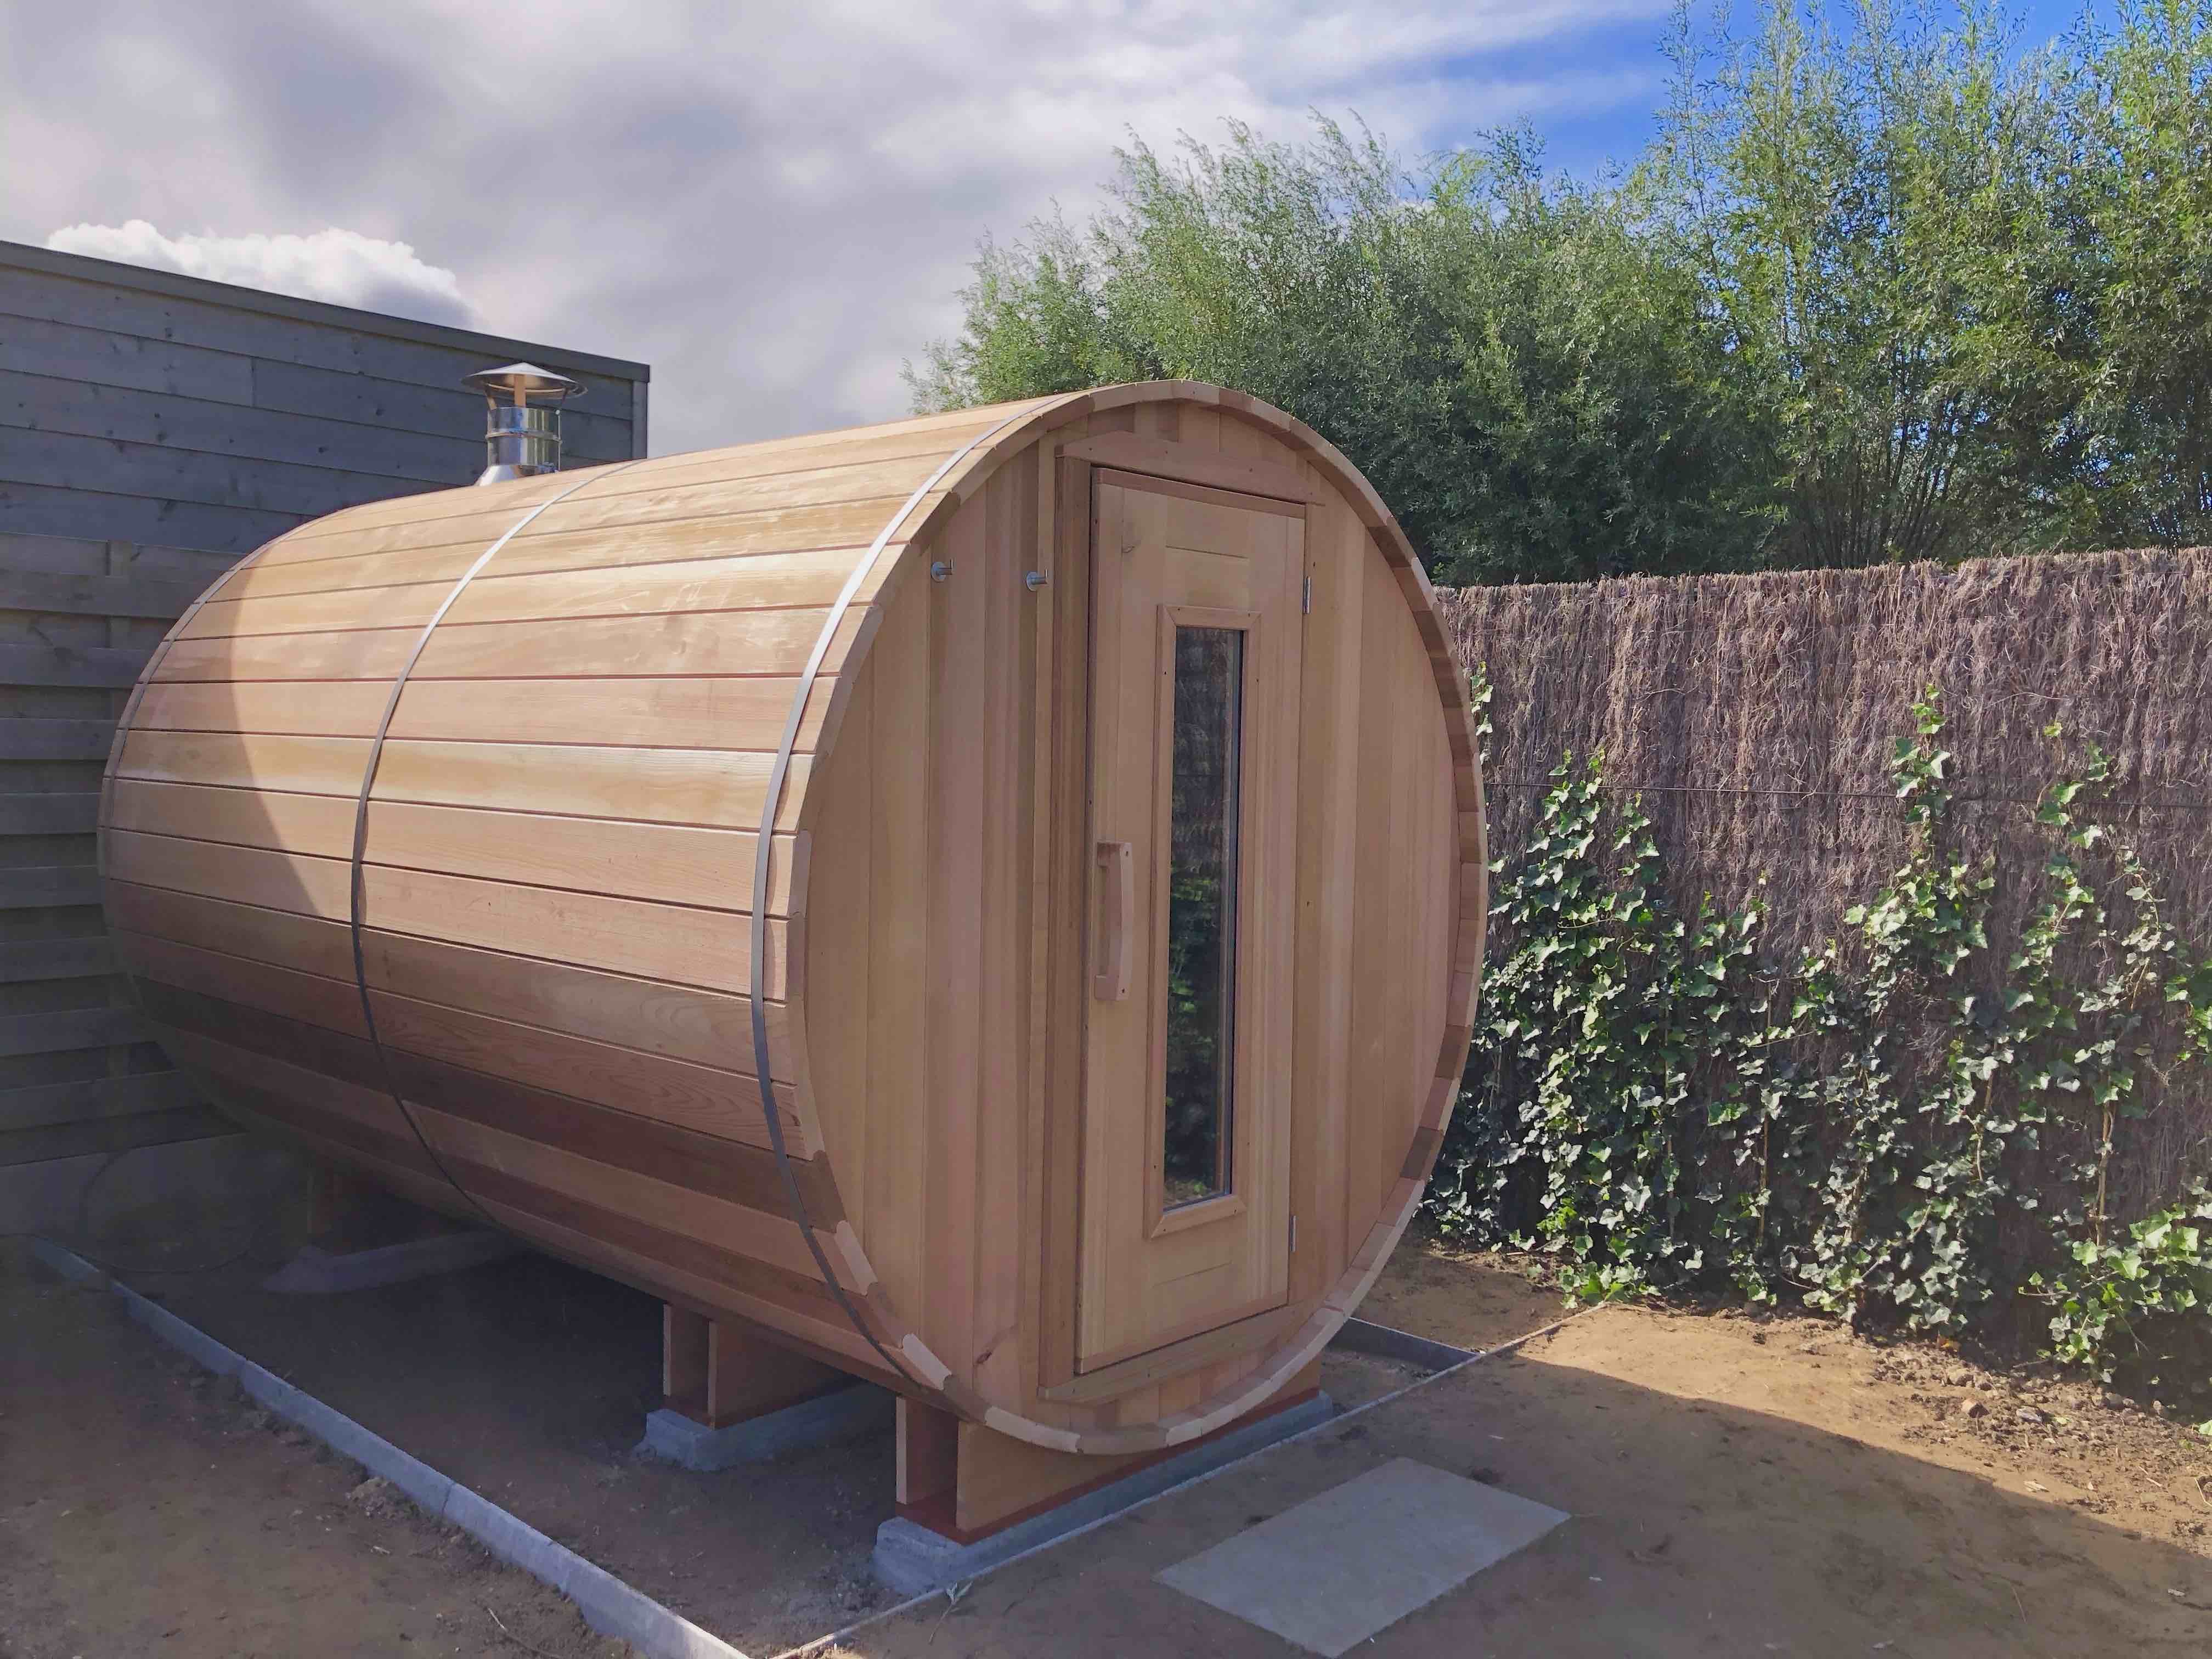 Sauna barril de sauna con espacio interior más largo en Roeselare